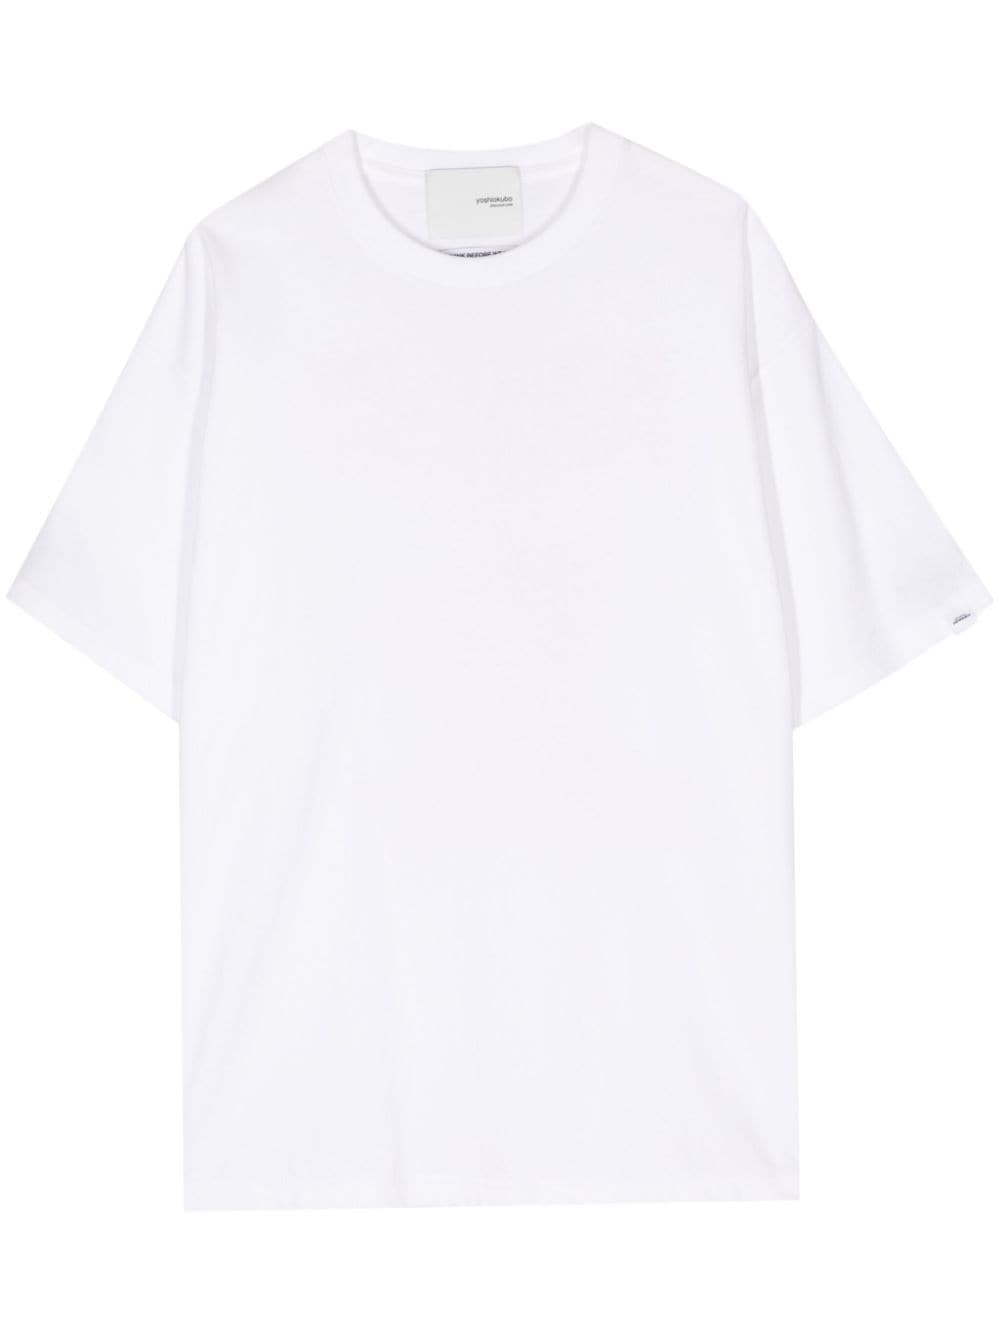 yoshiokubo t-shirt shark en coton - blanc